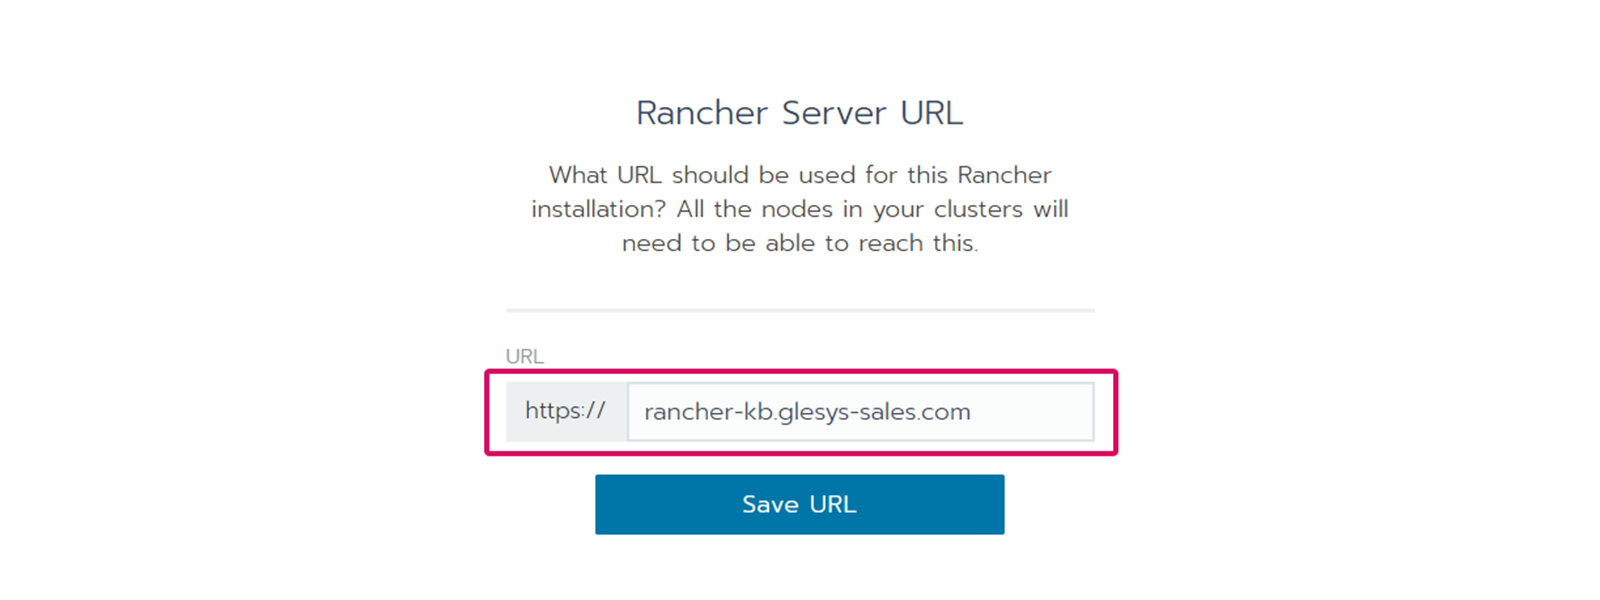 Bekräfta din URL i Rancher